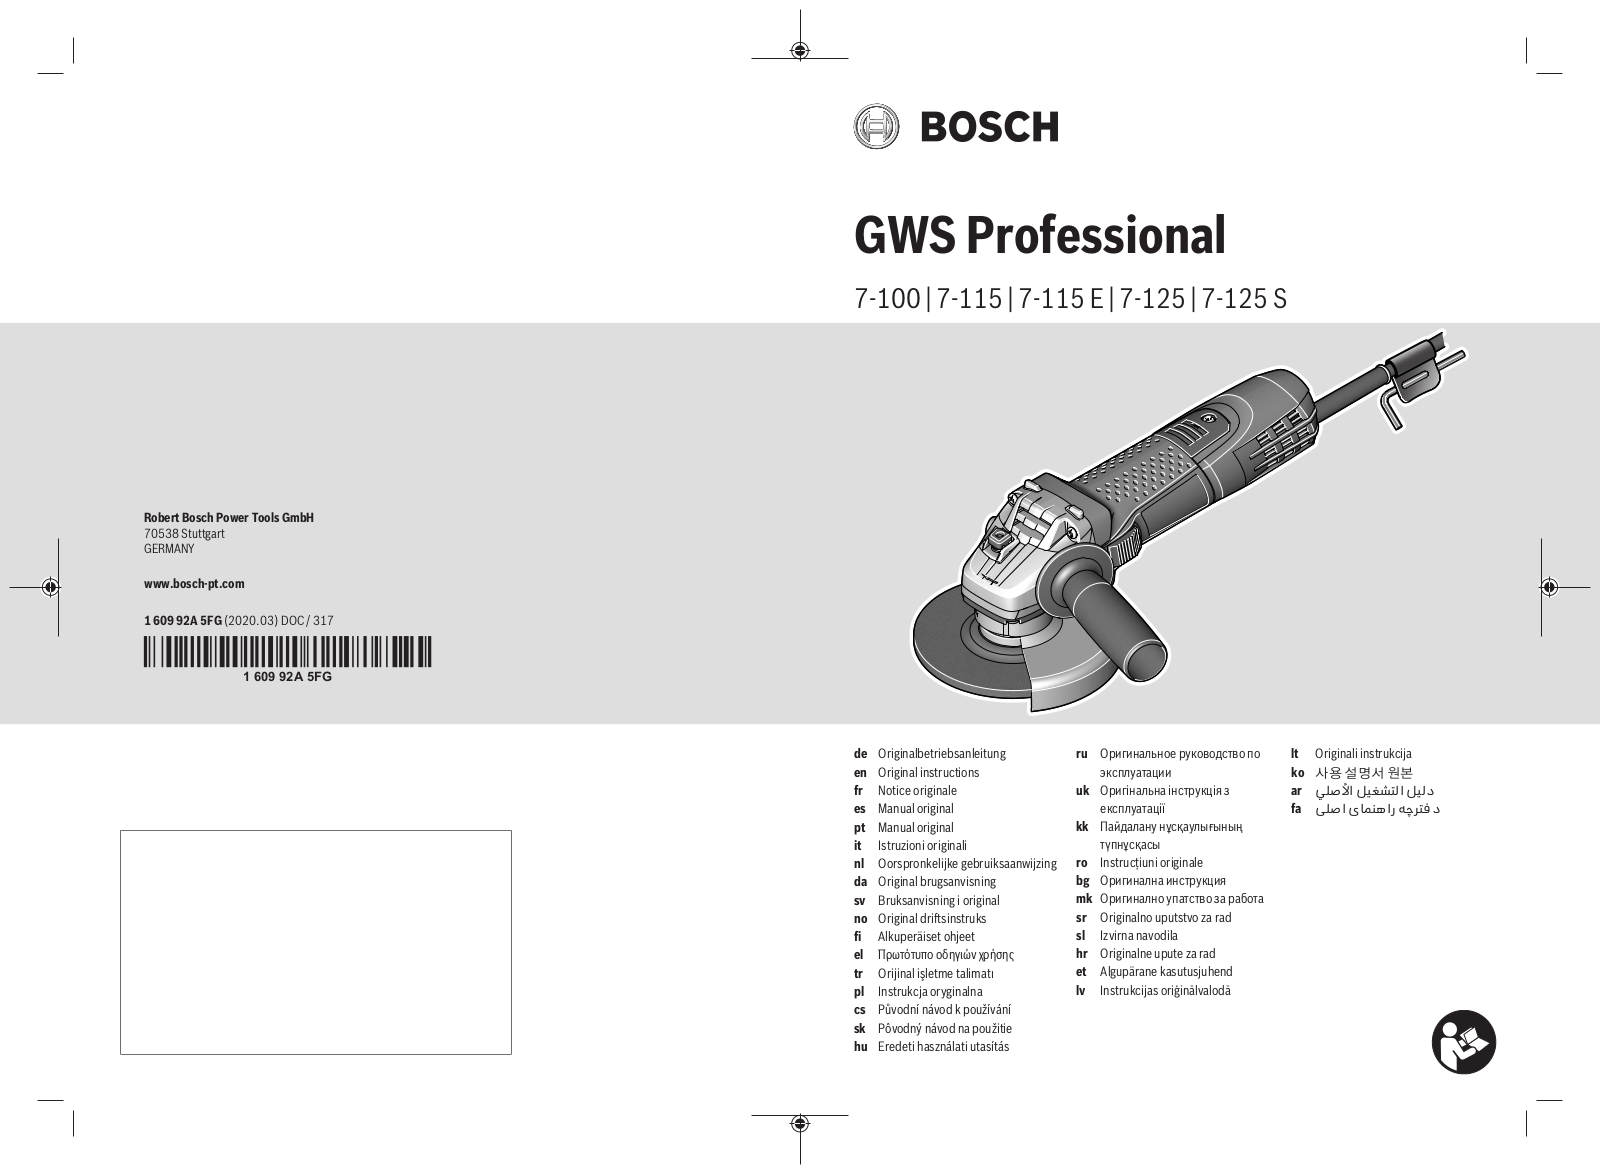 Bosch GWS 7-100, GWS 7-125S, GWS 7-115, GWS 7-115 E, GWS 7-125 User Manual